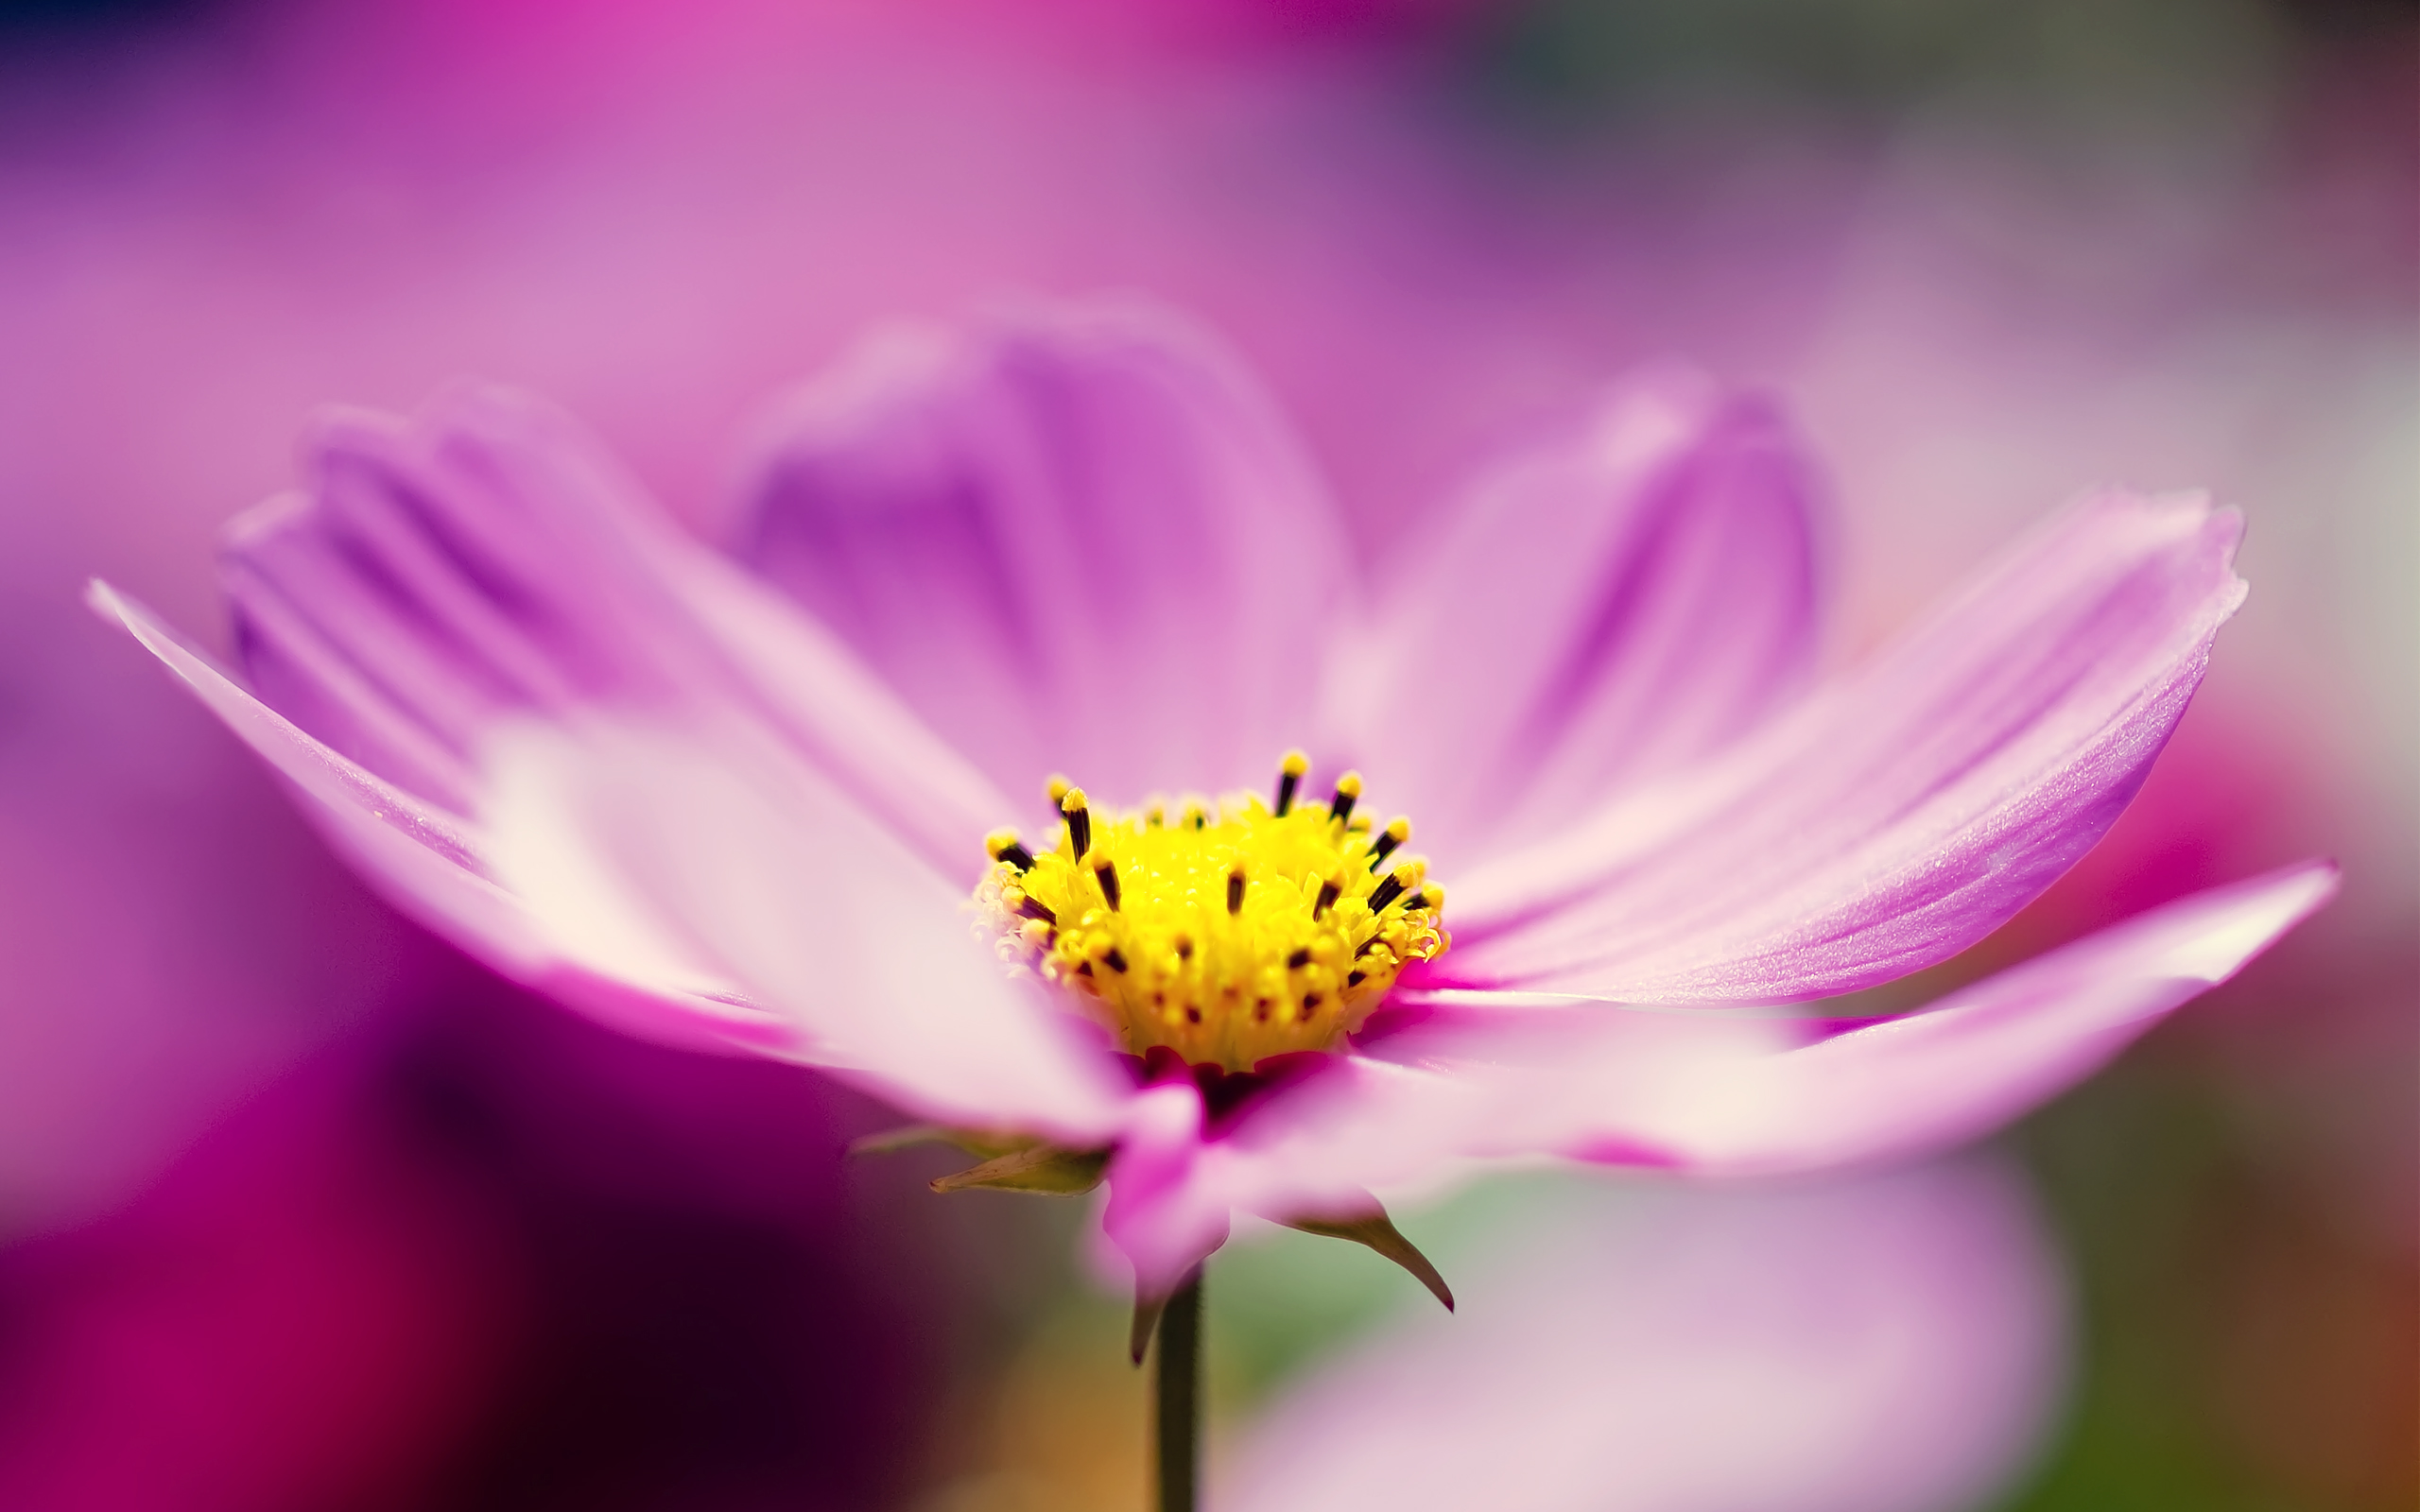 Khám phá niềm đam mê hoa cosmos tím với hình ảnh 4k sắc nét, đưa bạn đến với thế giới thơ mộng và mê hoặc của những bông hoa xinh đẹp này.